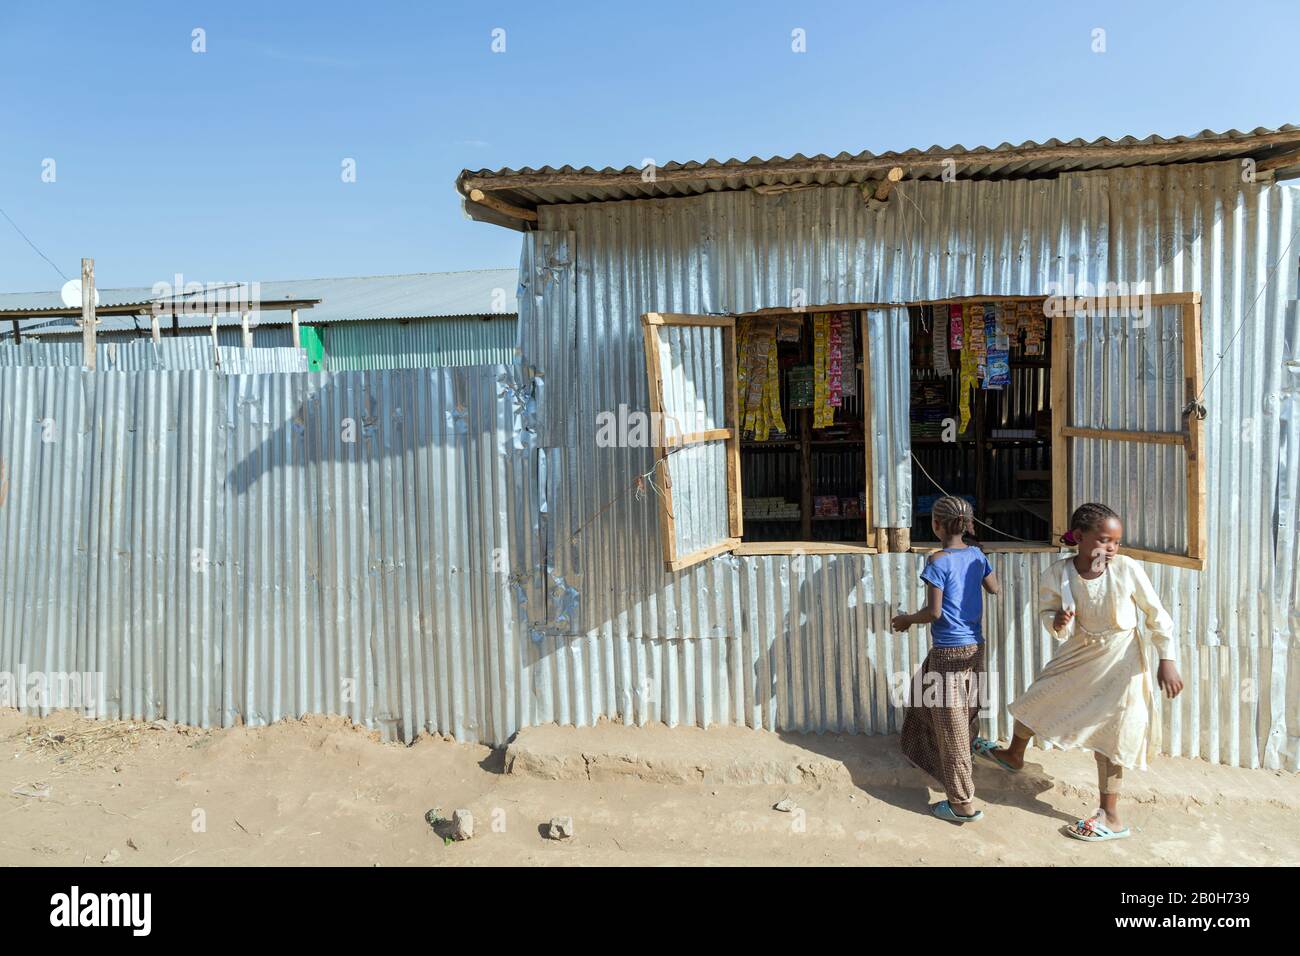 02.11.2019 leben und residieren Adama, Oromiyaa, Äthiopien - 8000 Binnenvertriebene aus der Region Somalia in vier Flüchtlingslagern am Stadtrand. Zwei Mädchen Stockfoto